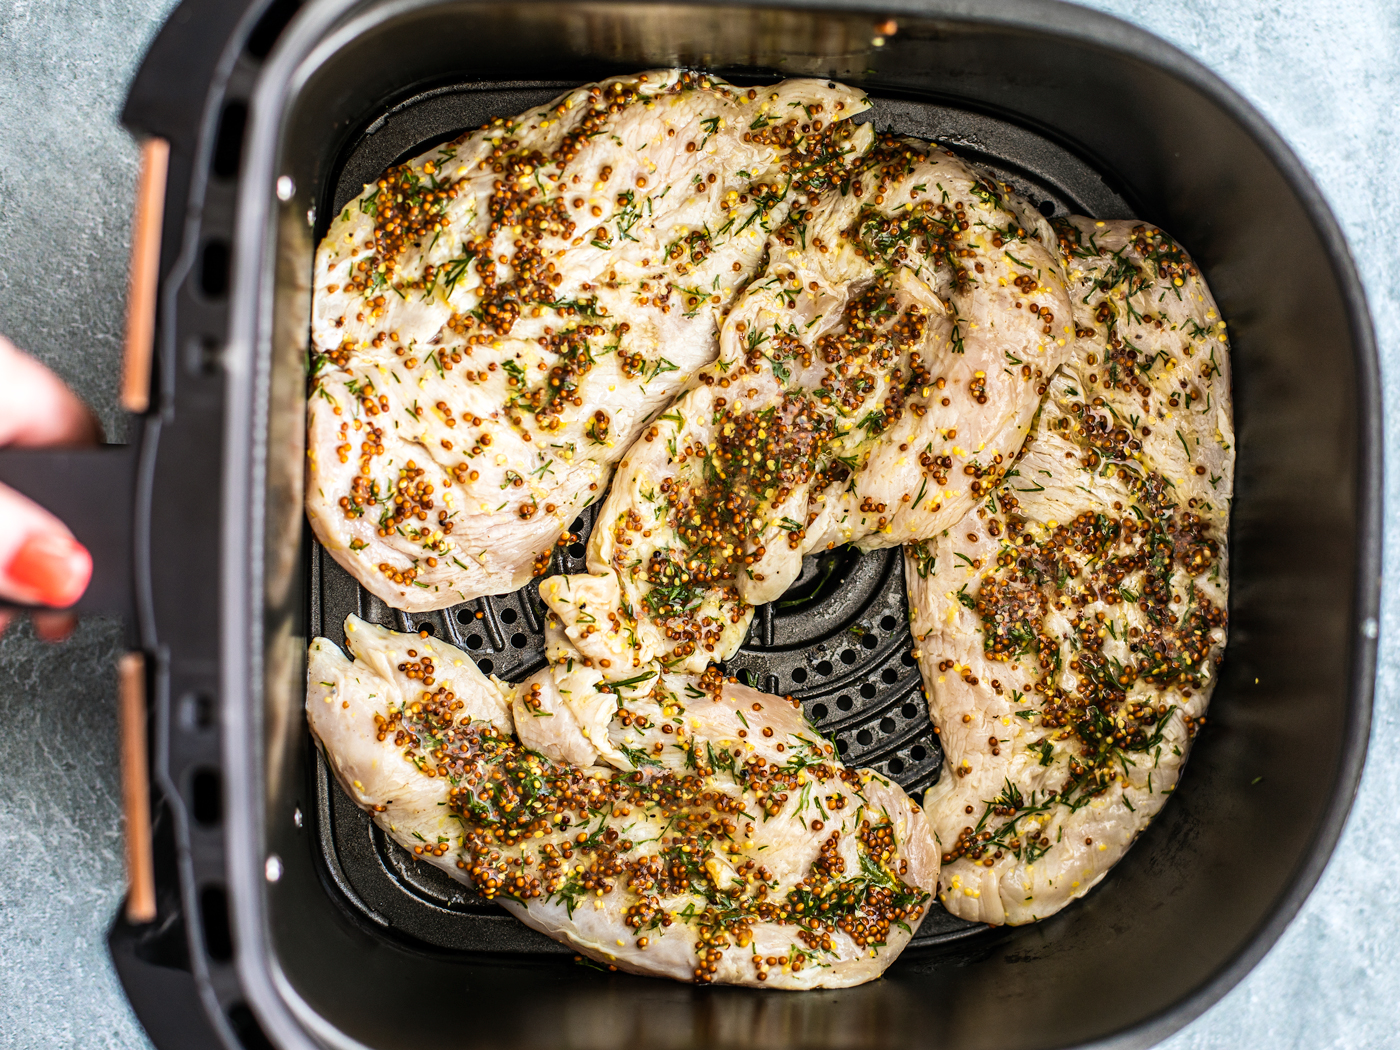 Marinated chicken breasts in air fryer basket.